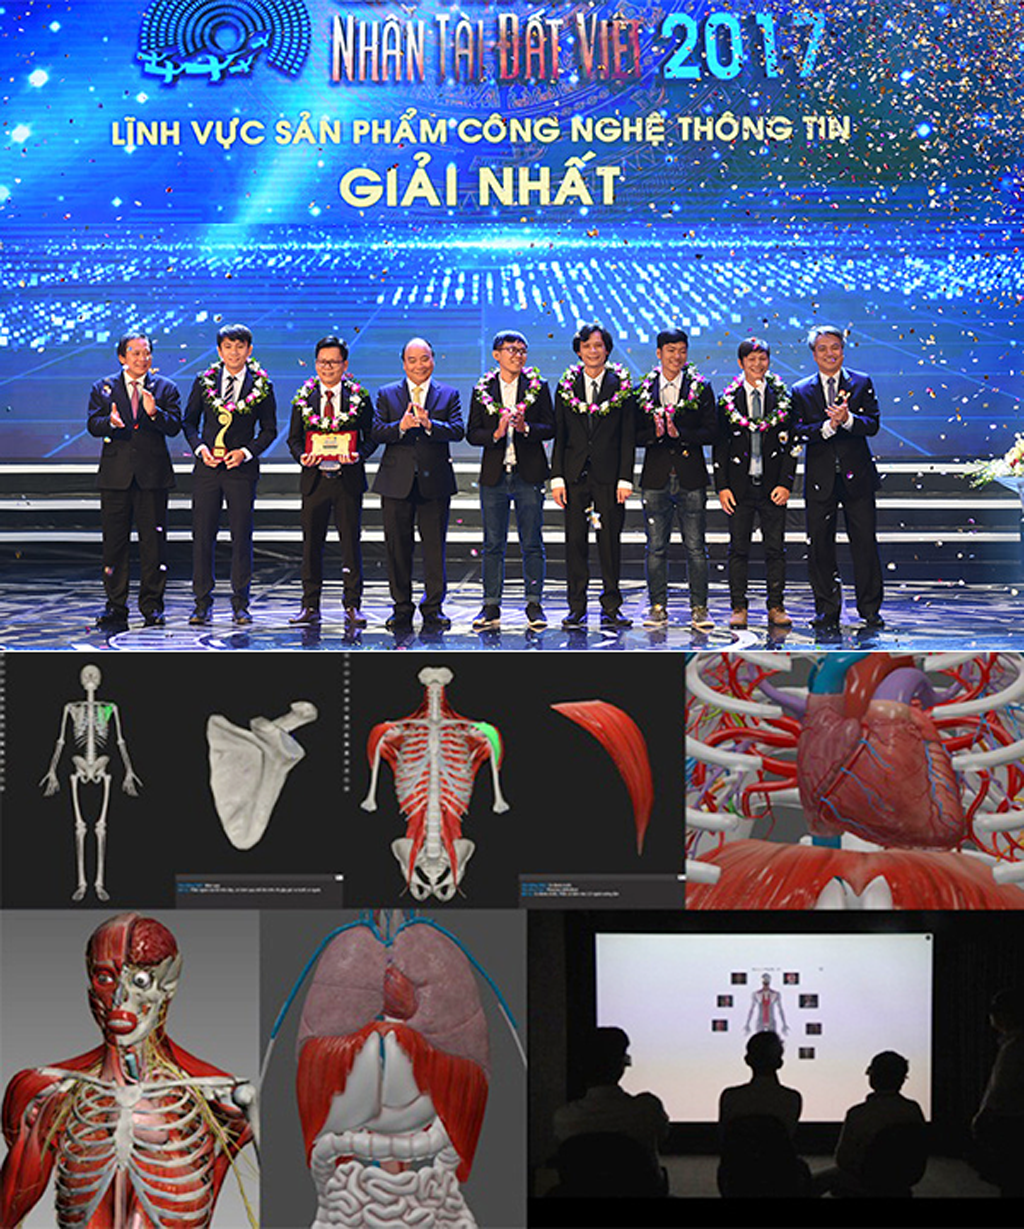 Thủ tướng Nguyễn Xuân Phúc trao giải Nhất lĩnh vực CNTT Giải thưởng Nhân tài Đất việt 2017 cho nhóm tác giả ĐH Duy Tân